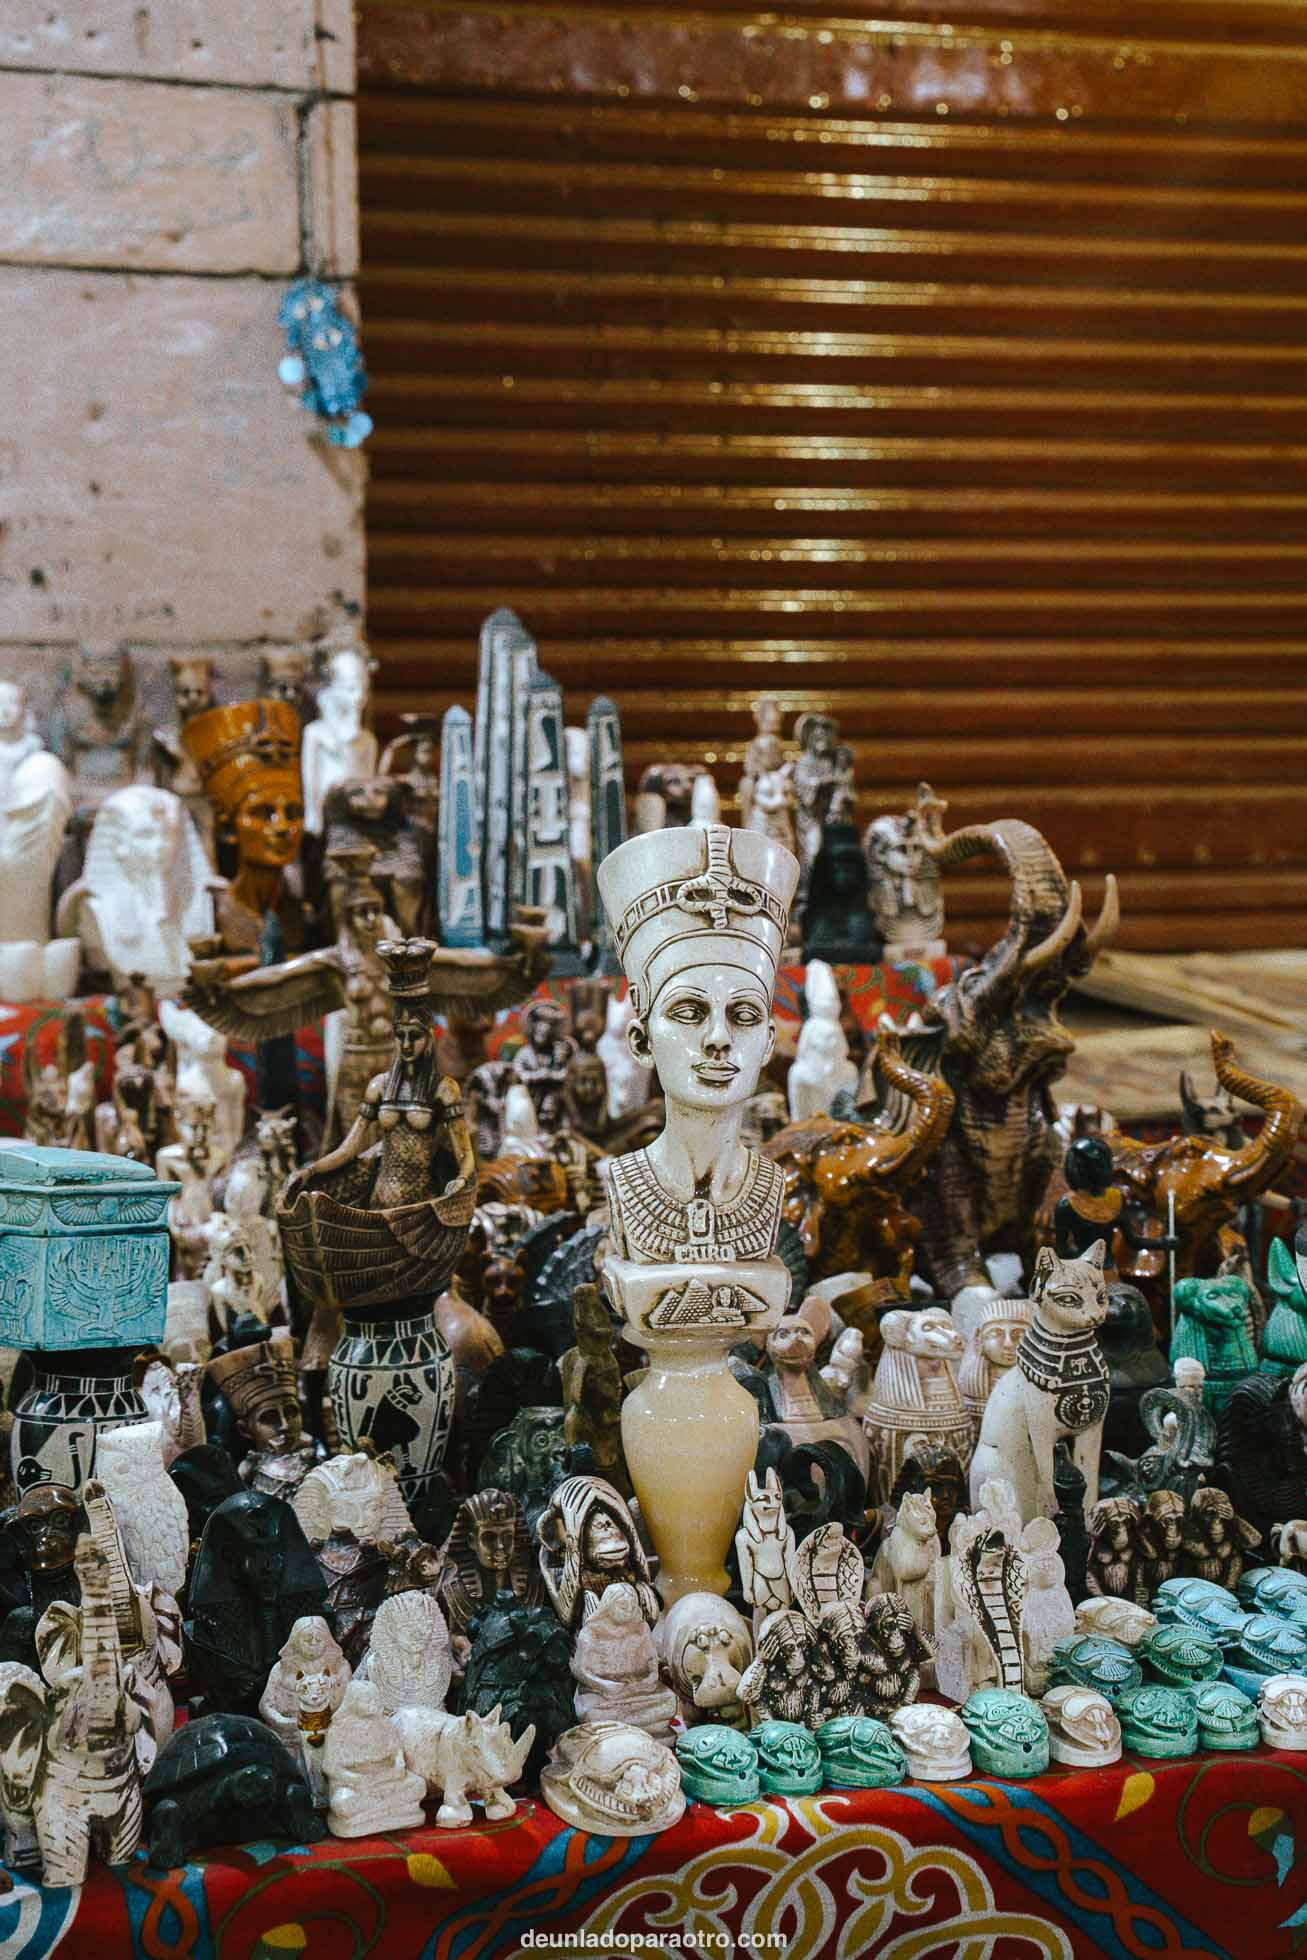 Figuras y recuerdos en el Zoco de Luxor, el mejor lugar que ver en Luxor para comprar